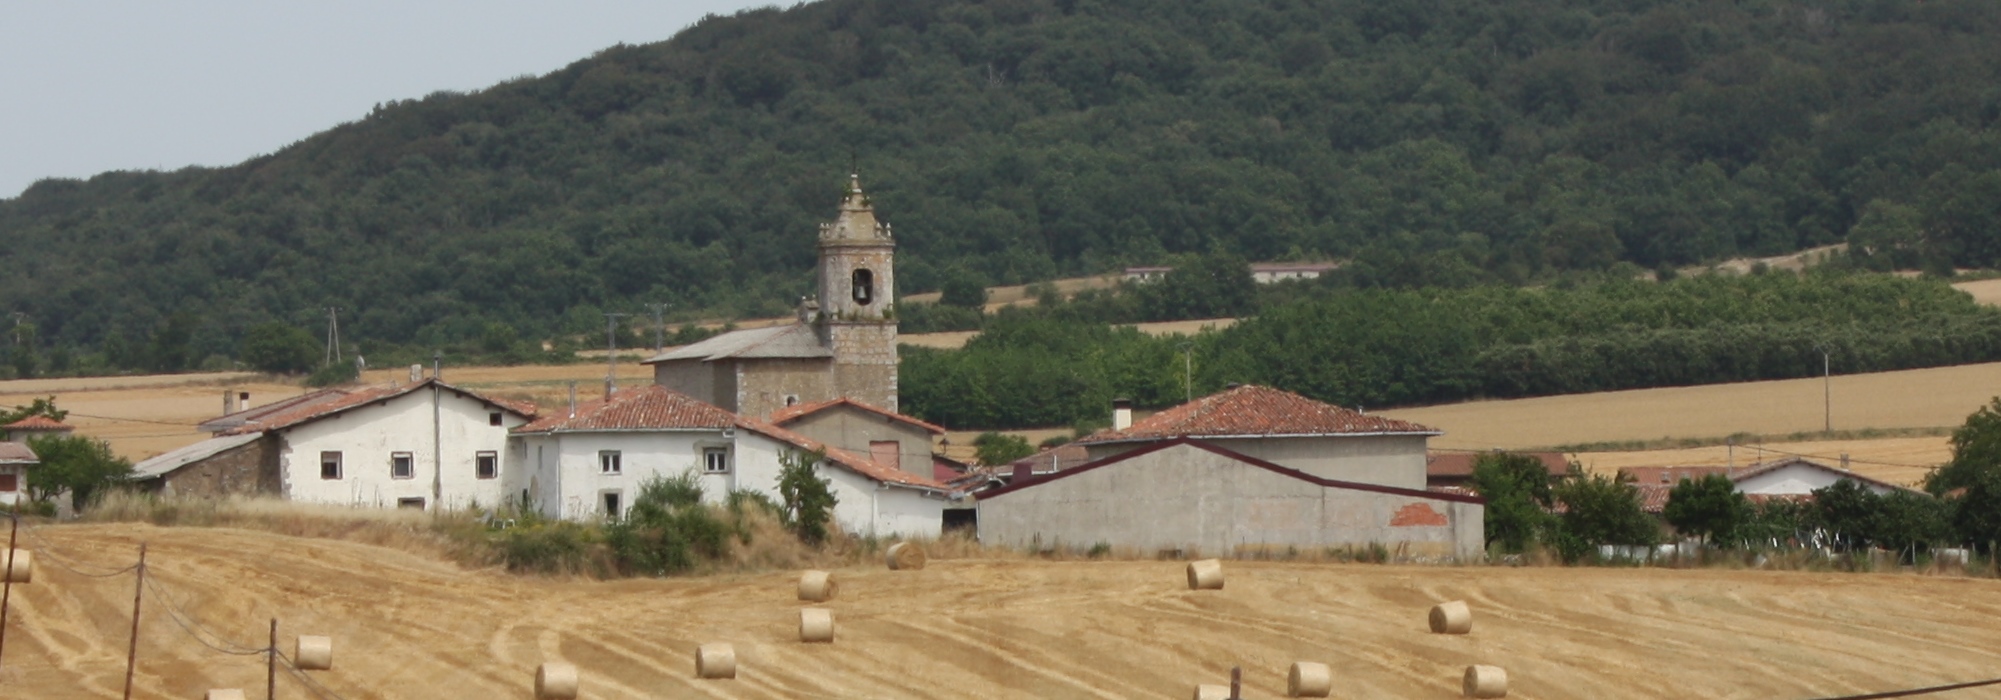 2. Ayuntamiento del Valle de Arana